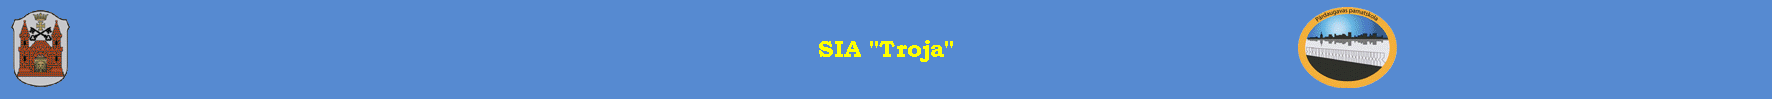 SIA "Troja"